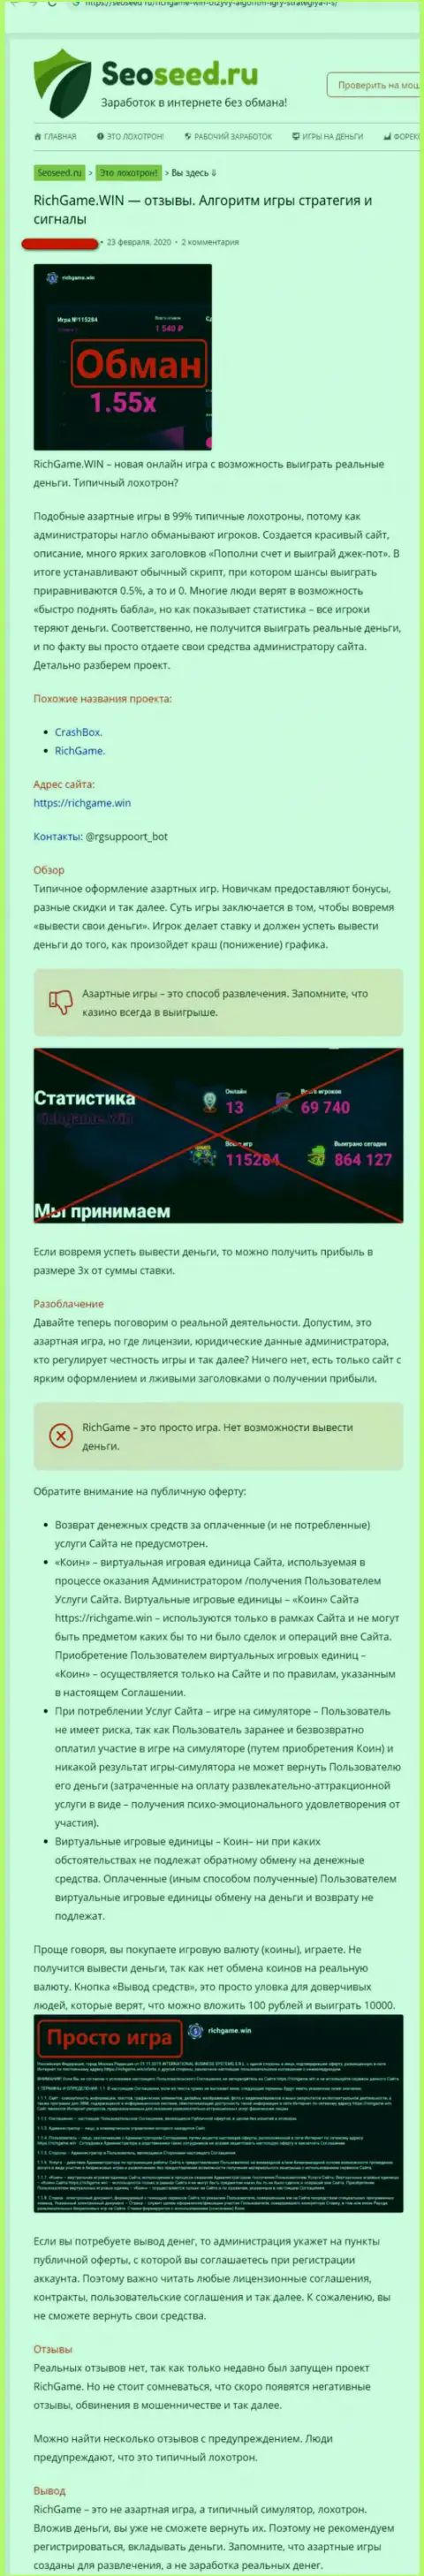 Обзор и отзывы о компании RichGame Win - это ВОРЮГИ !!!